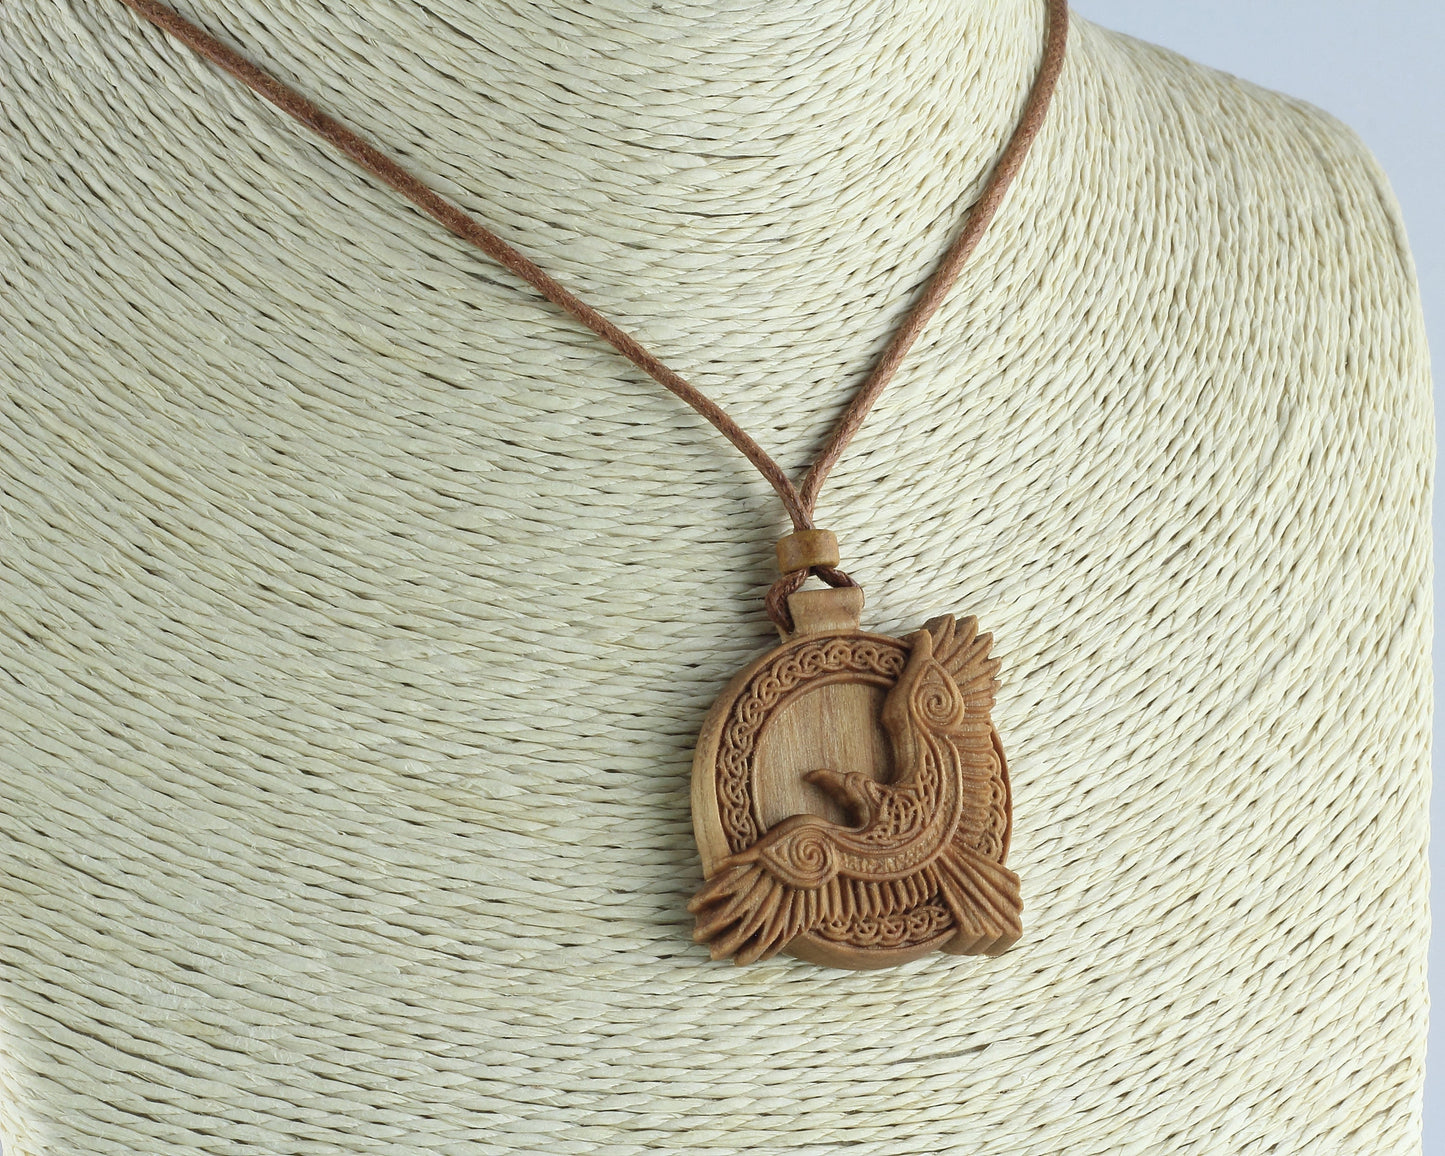 Raven necklace, wooden pendant